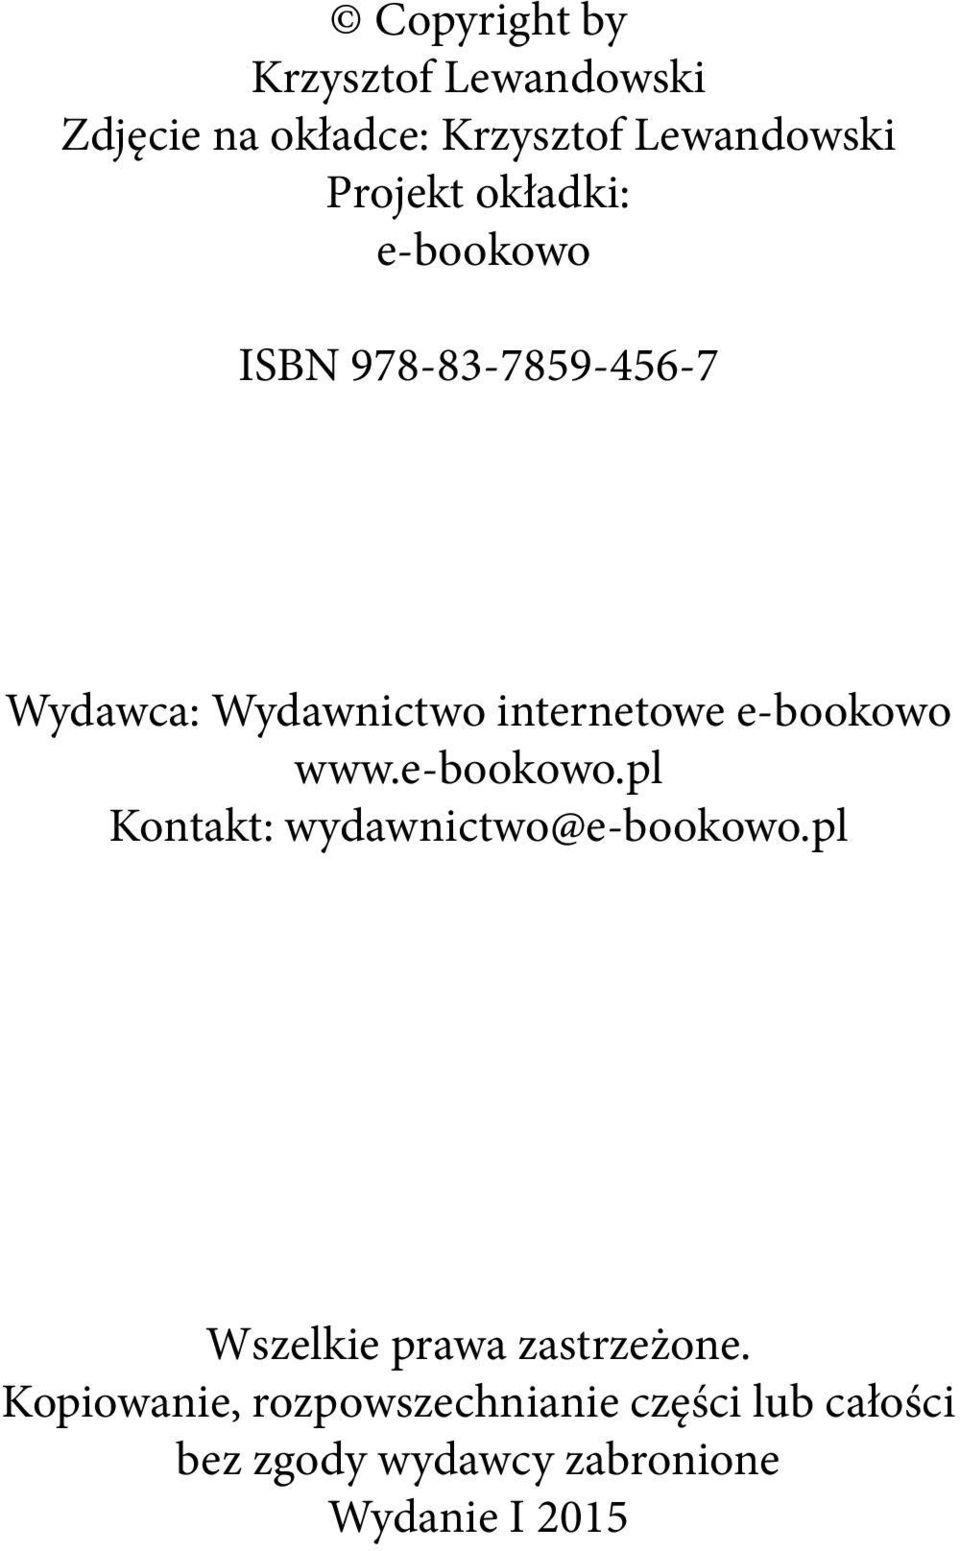 www.e-bookowo.pl Kontakt: wydawnictwo@e-bookowo.pl Wszelkie prawa zastrzeżone.